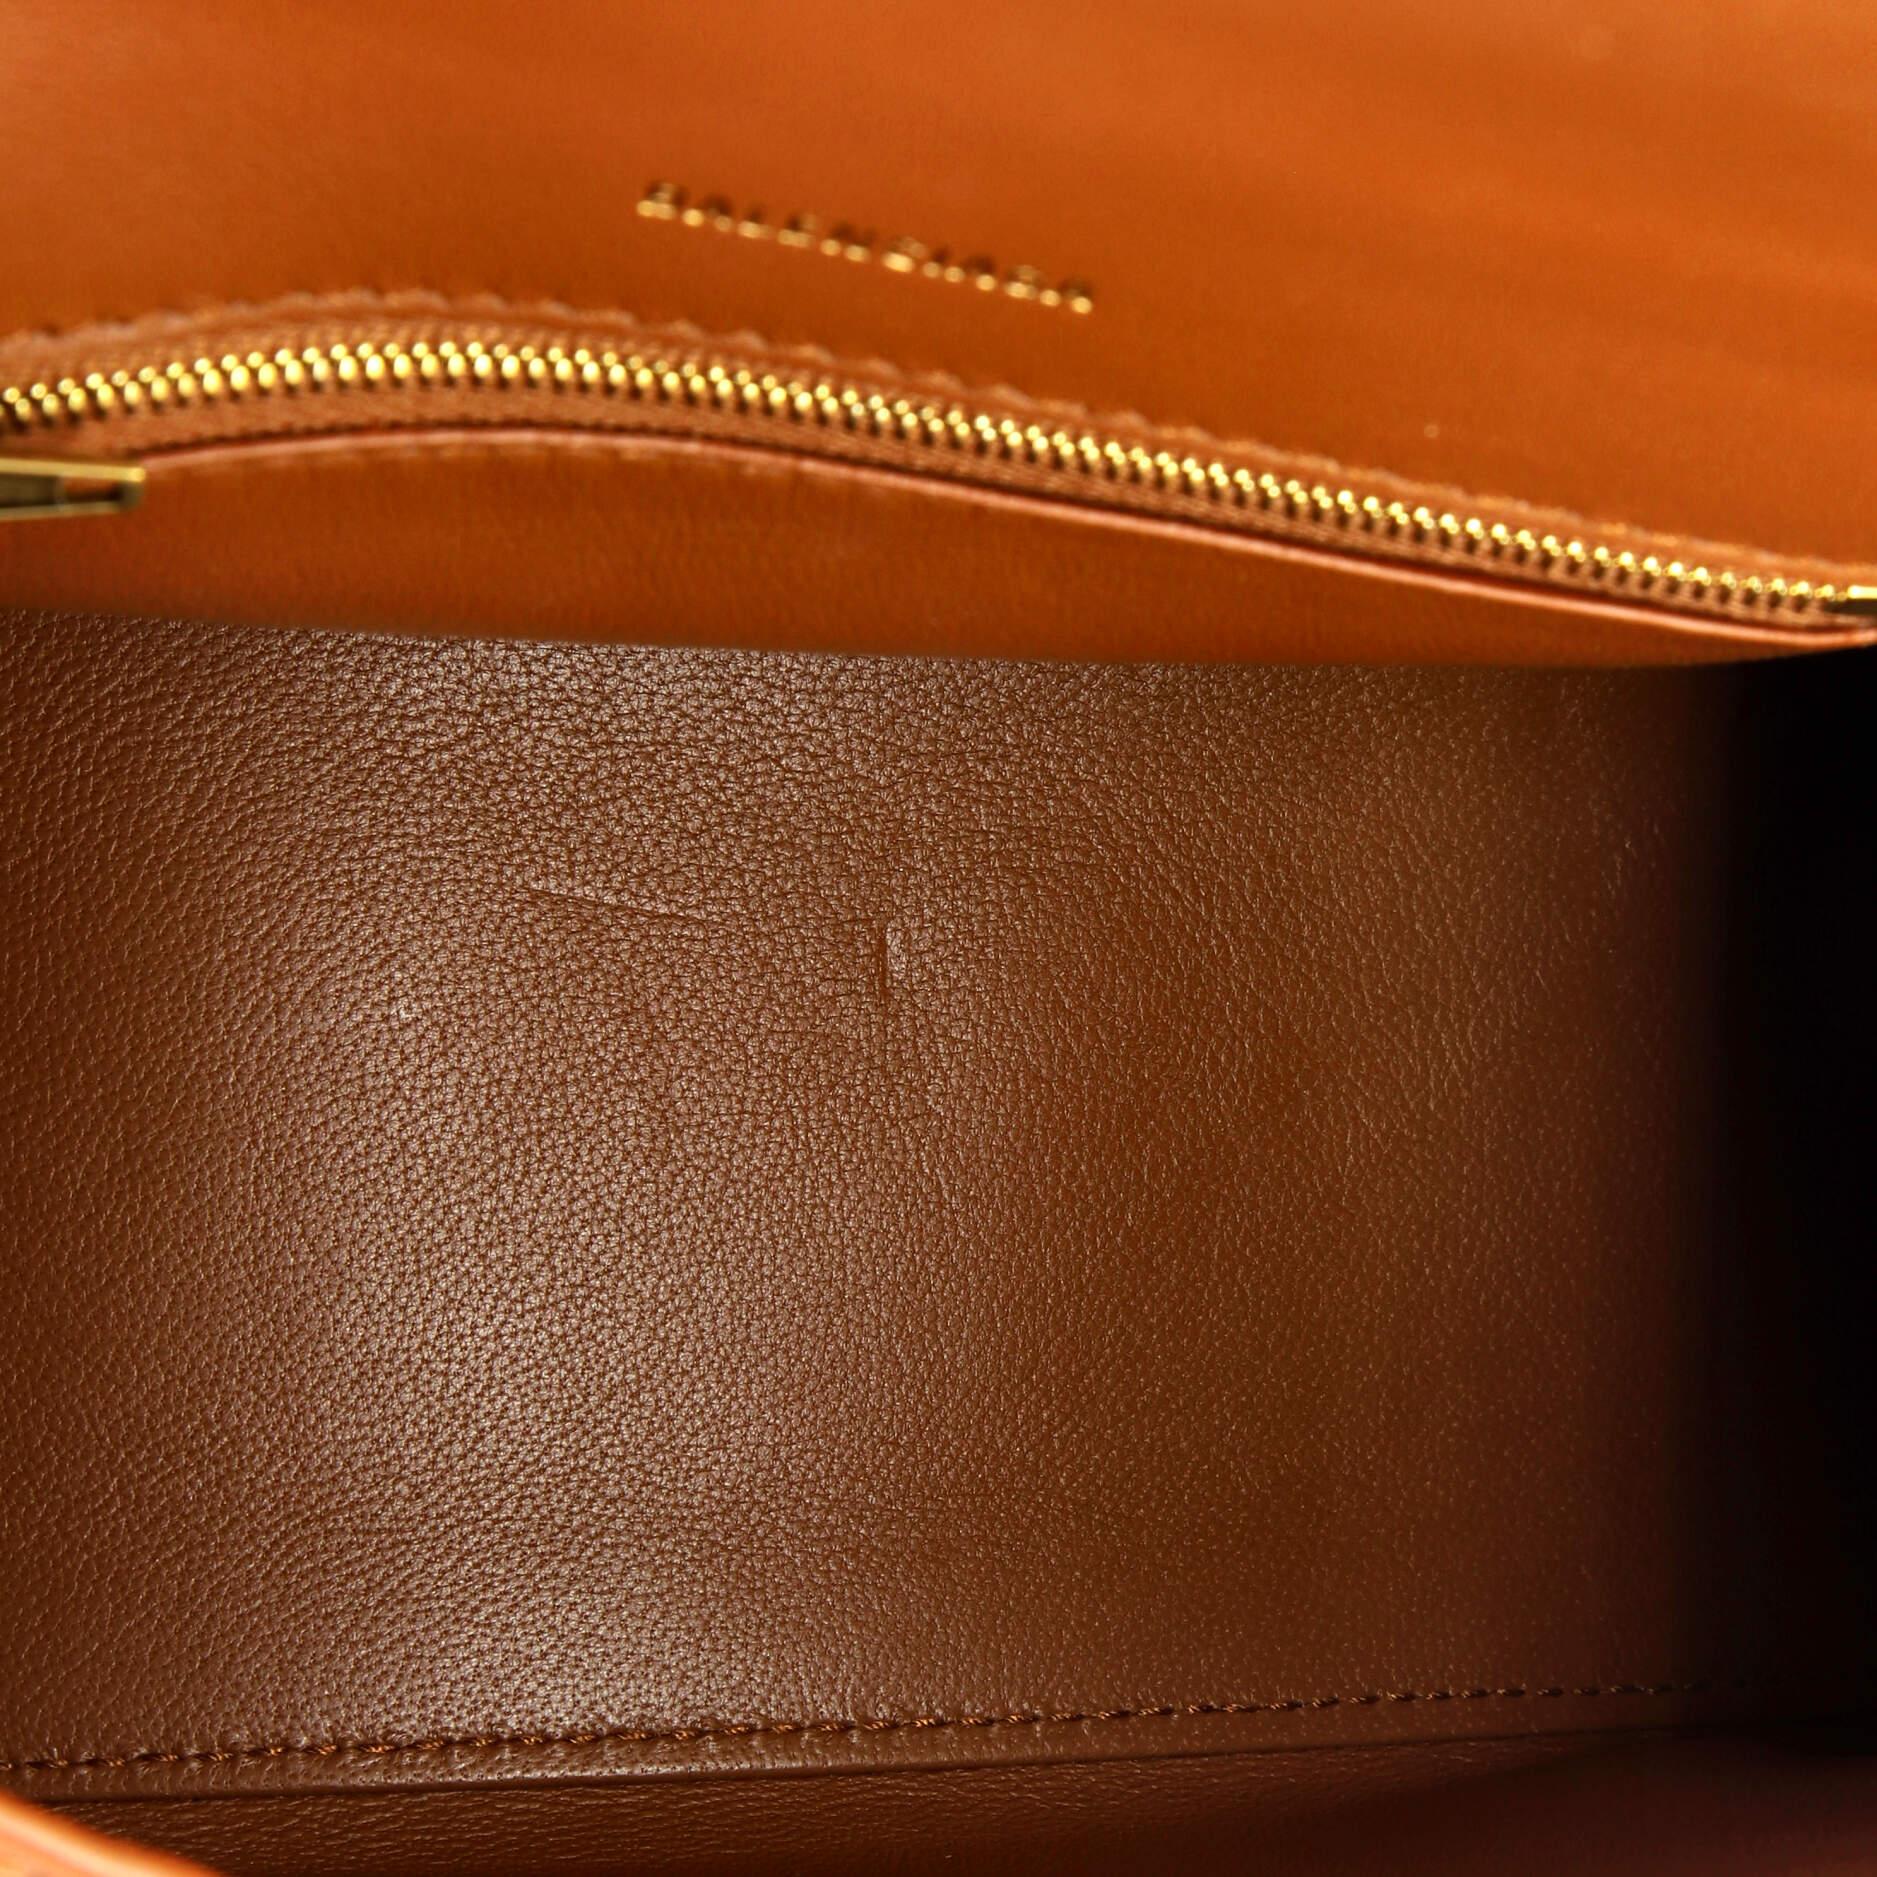 Balenciaga Hourglass Top Handle Bag Leather Small 1